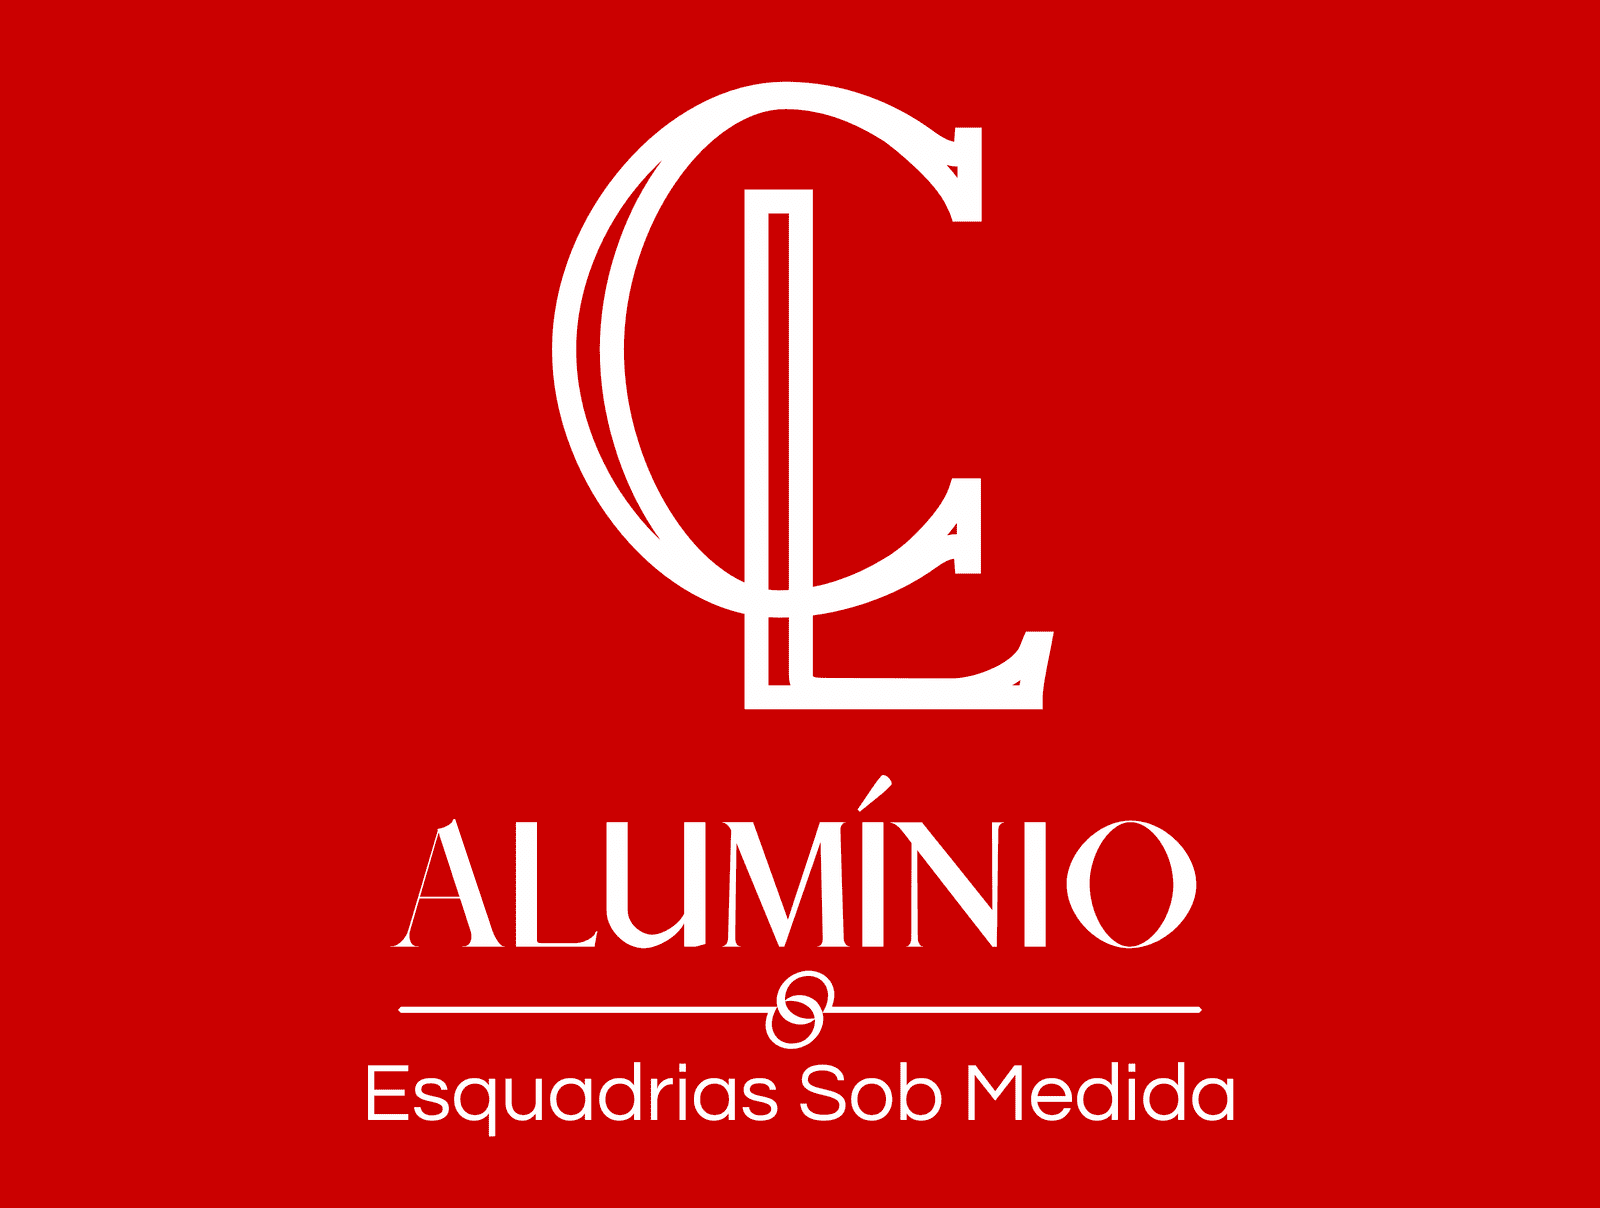 (c) Claluminio.com.br